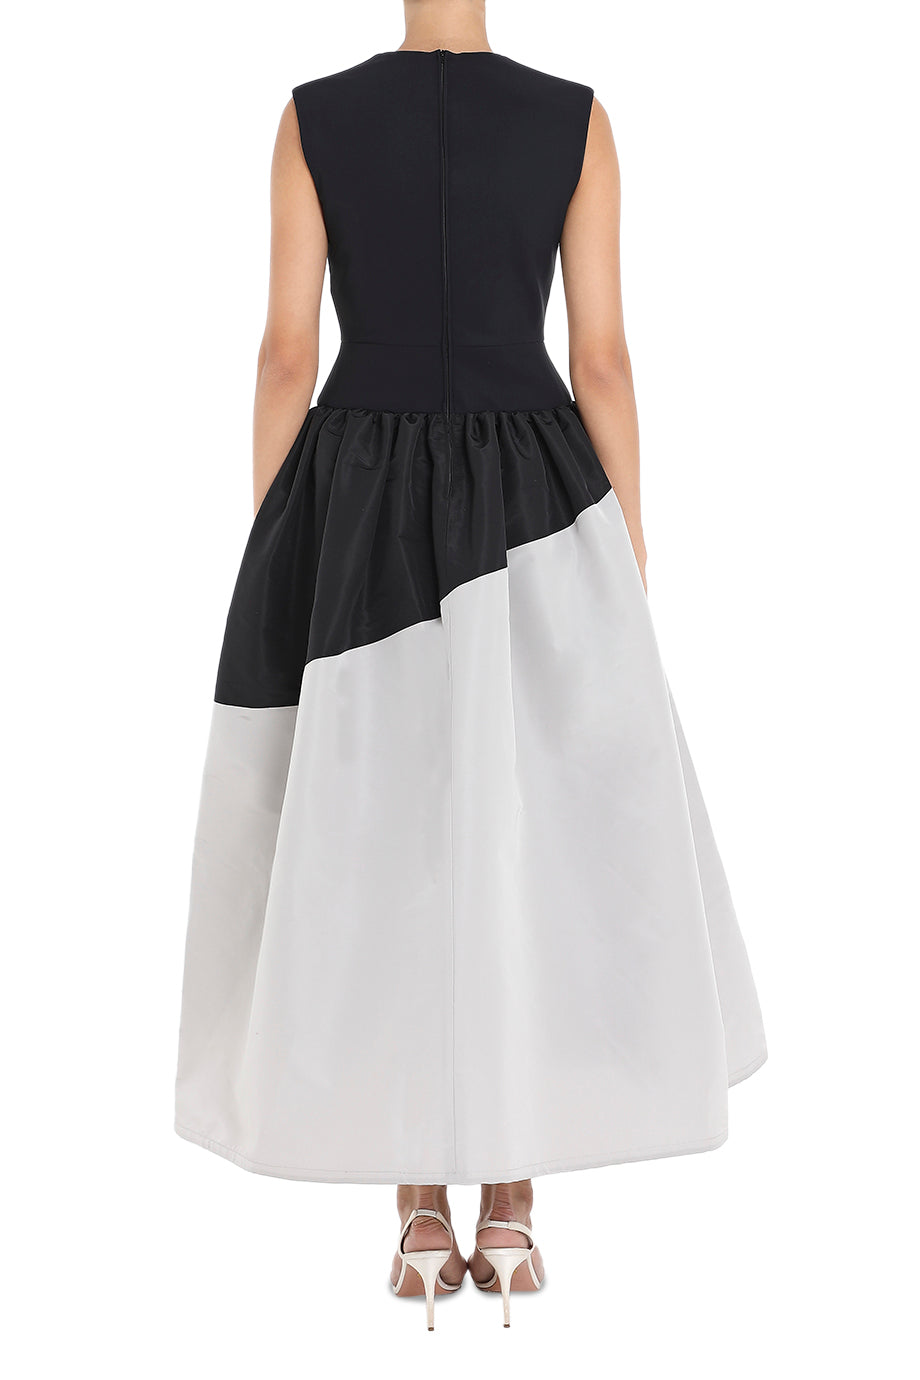 Aphne With Midi-Length Skirt